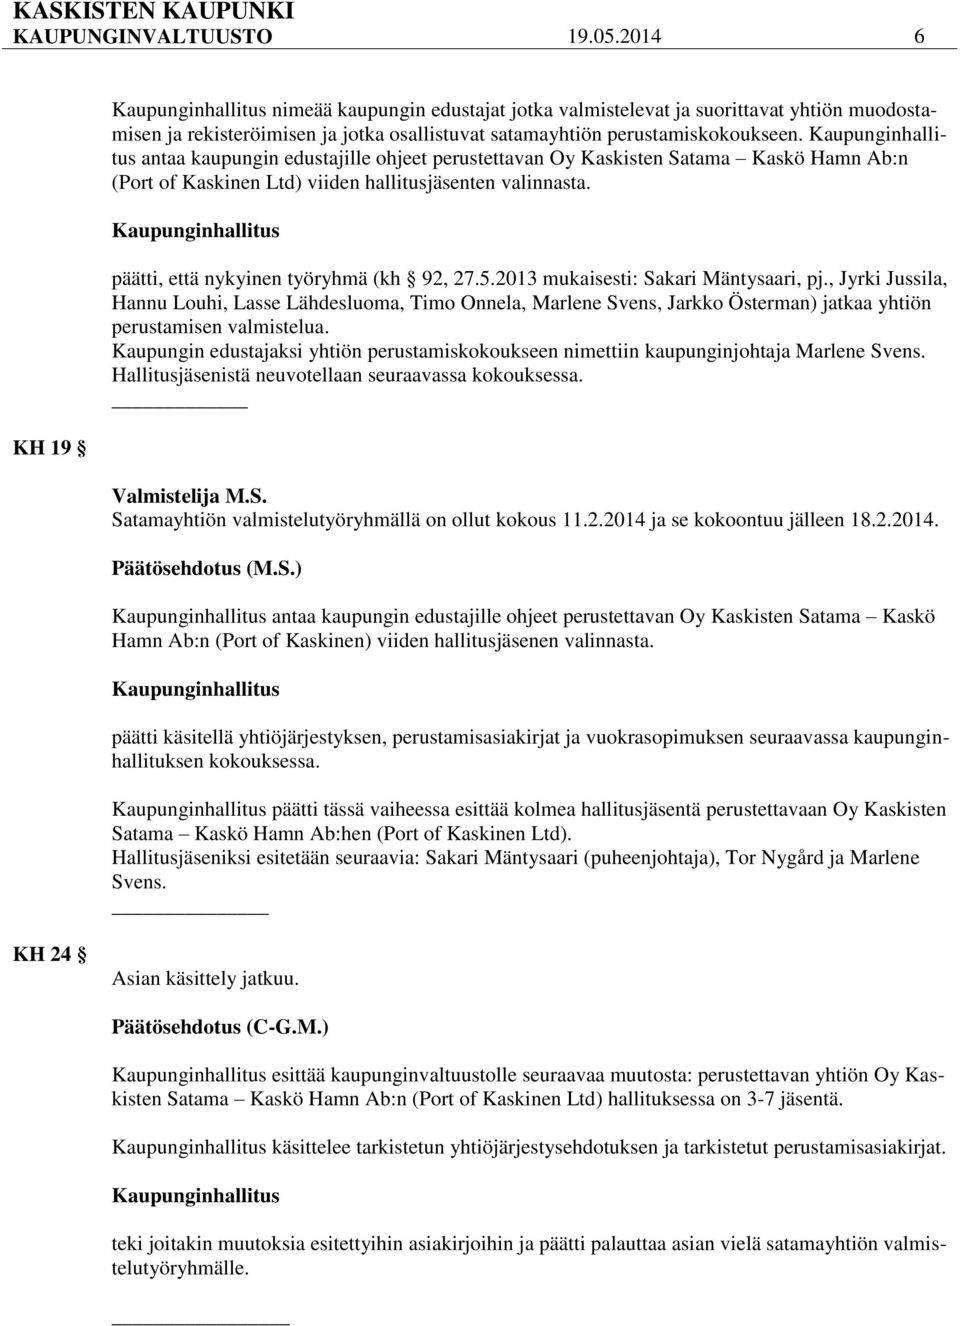 2013 mukaisesti: Sakari Mäntysaari, pj., Jyrki Jussila, Hannu Louhi, Lasse Lähdesluoma, Timo Onnela, Marlene Svens, Jarkko Österman) jatkaa yhtiön perustamisen valmistelua.